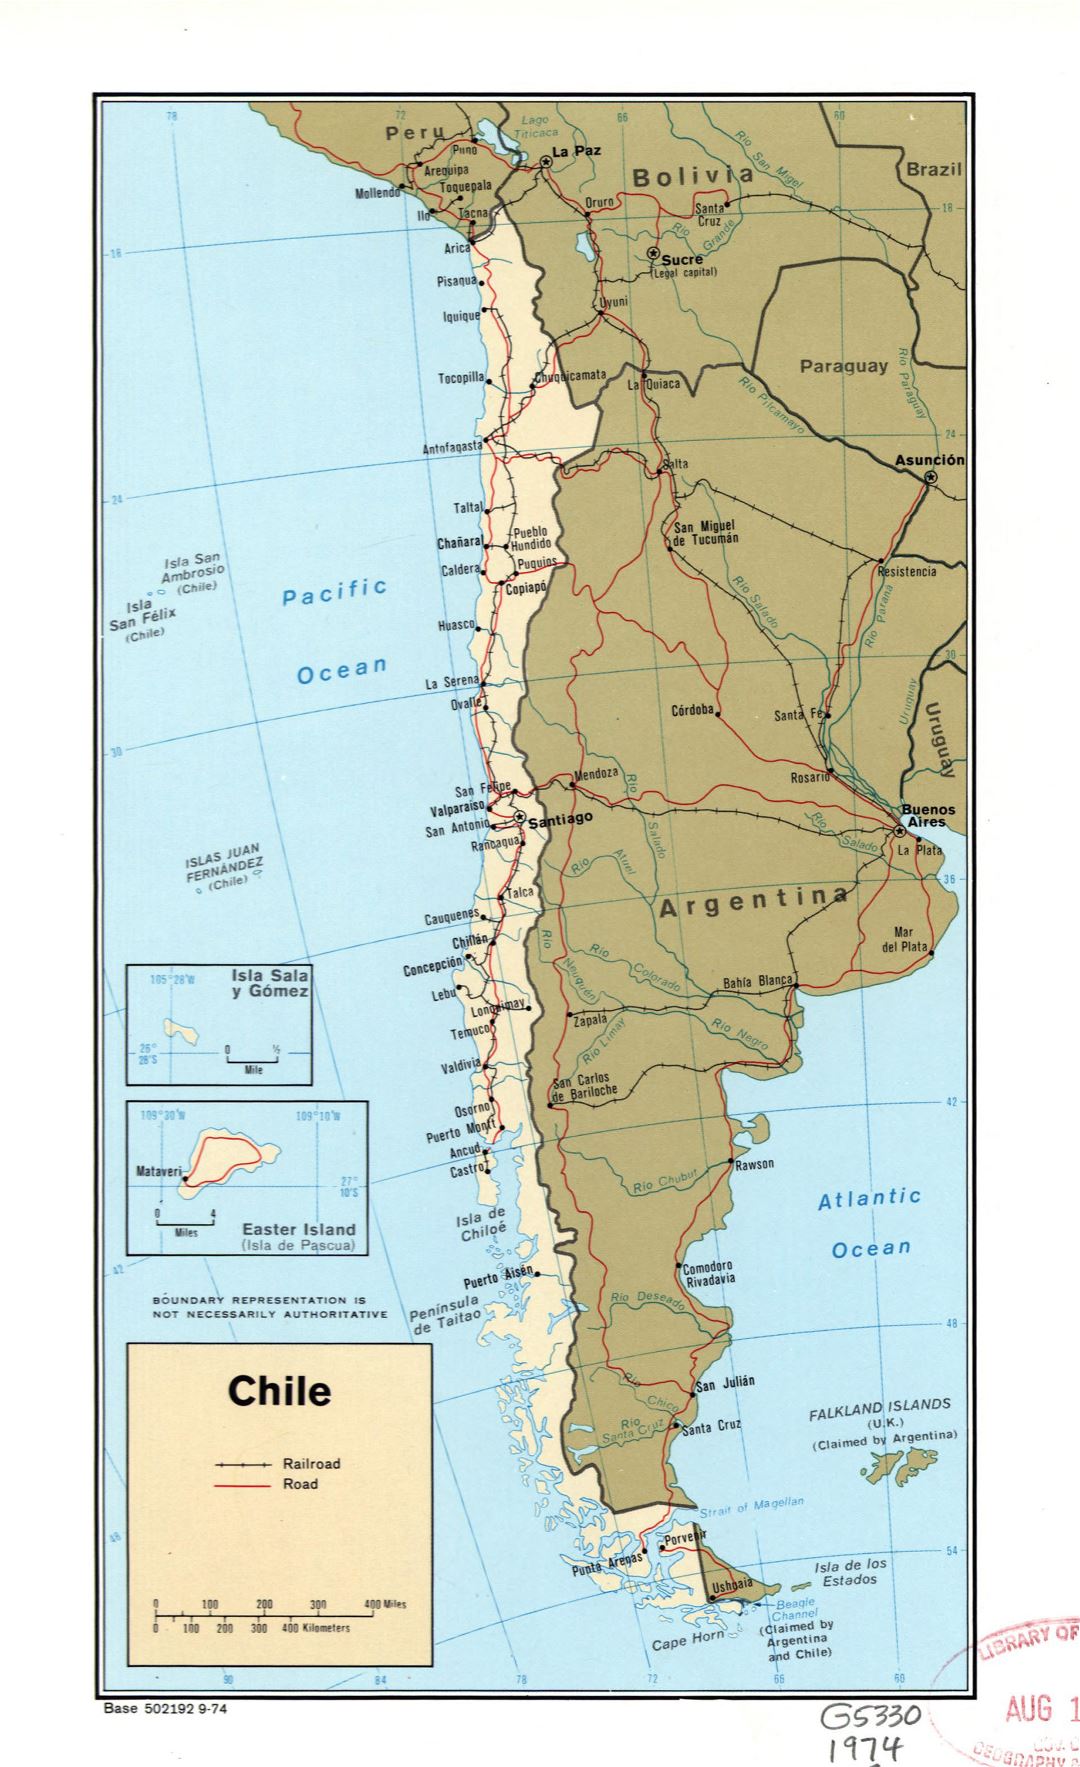 Большая политическая карта Чили с пометками дорог, железных дорог и крупных городов - 1974